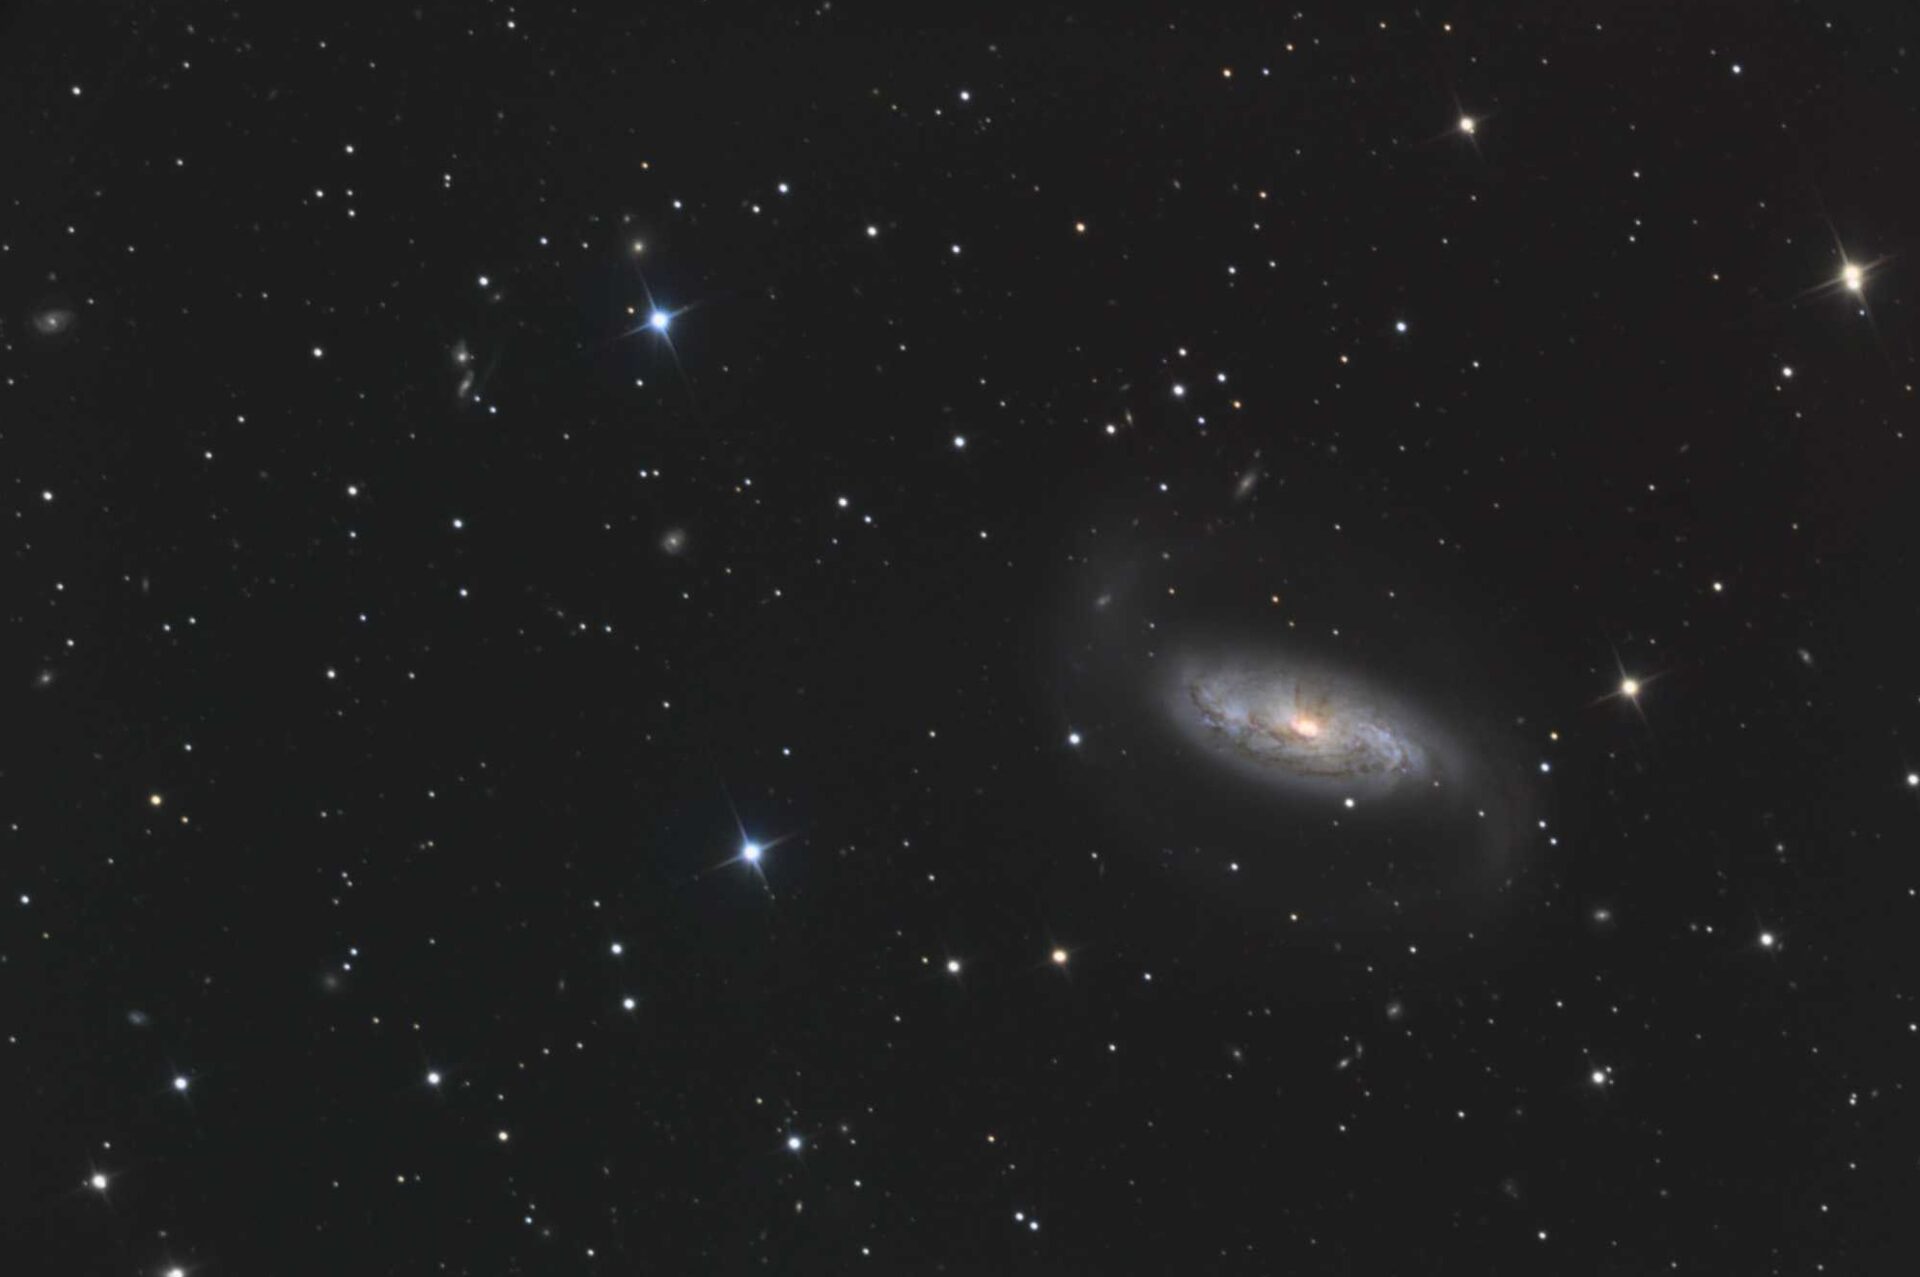 NGC 1808